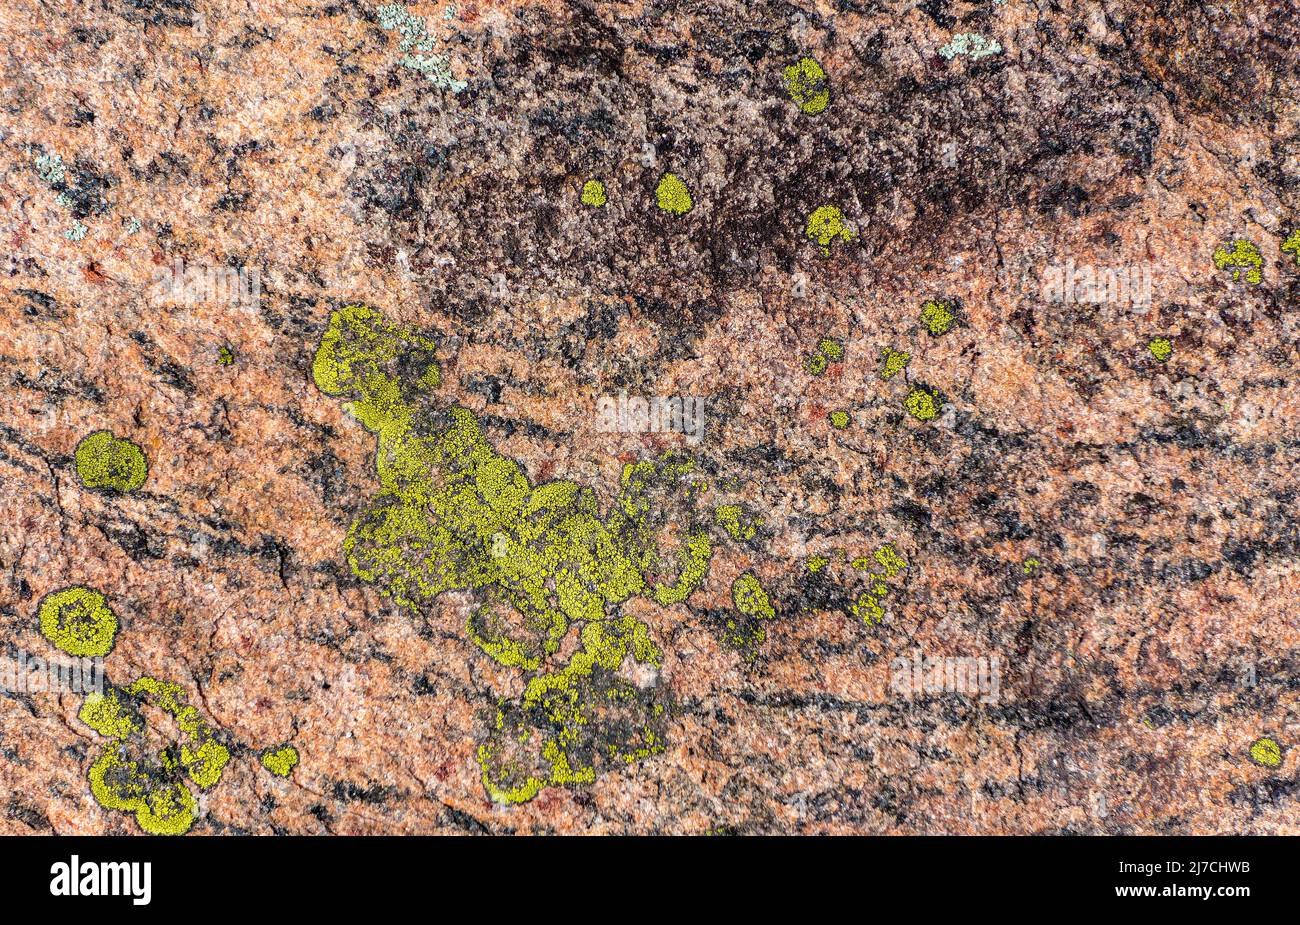 La nouvelle croissance du lichen vert crée des patrons intéressants sur le granite rose dans le district des lacs Muskoka, Ontario Canada. Banque D'Images